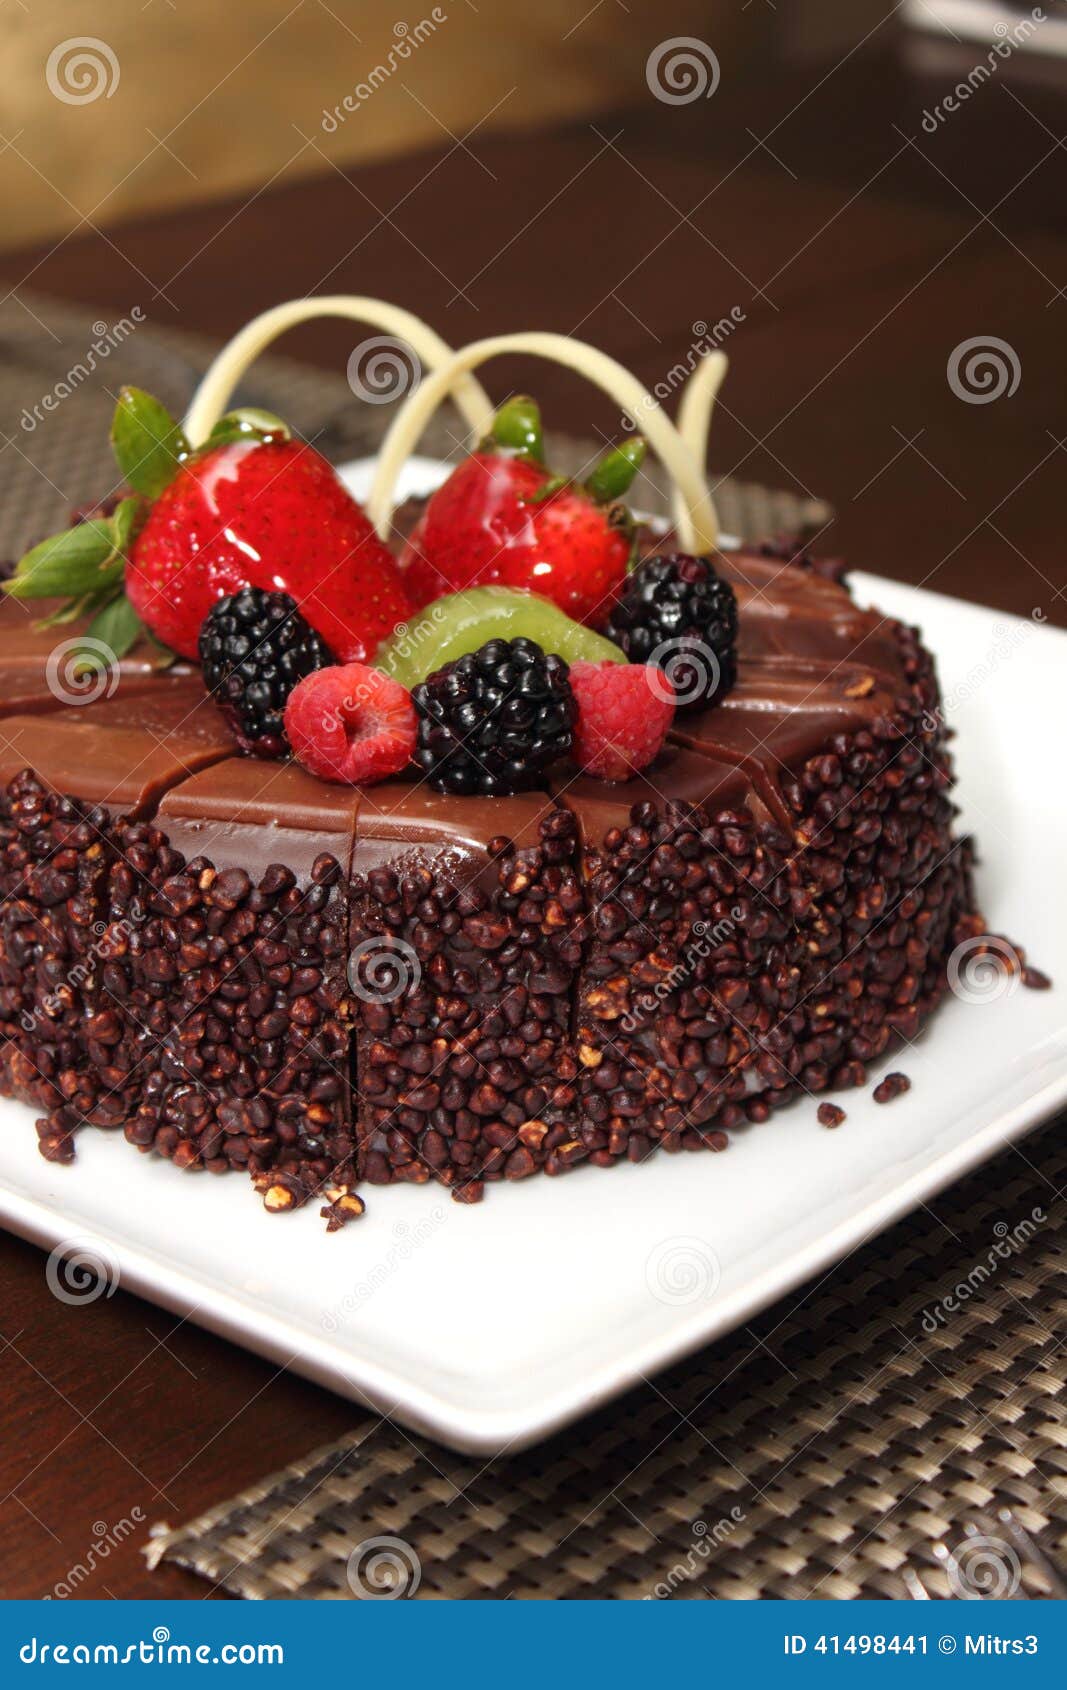 Chocolate Cake With Fresh Fruit Decoration. Stock Image ...